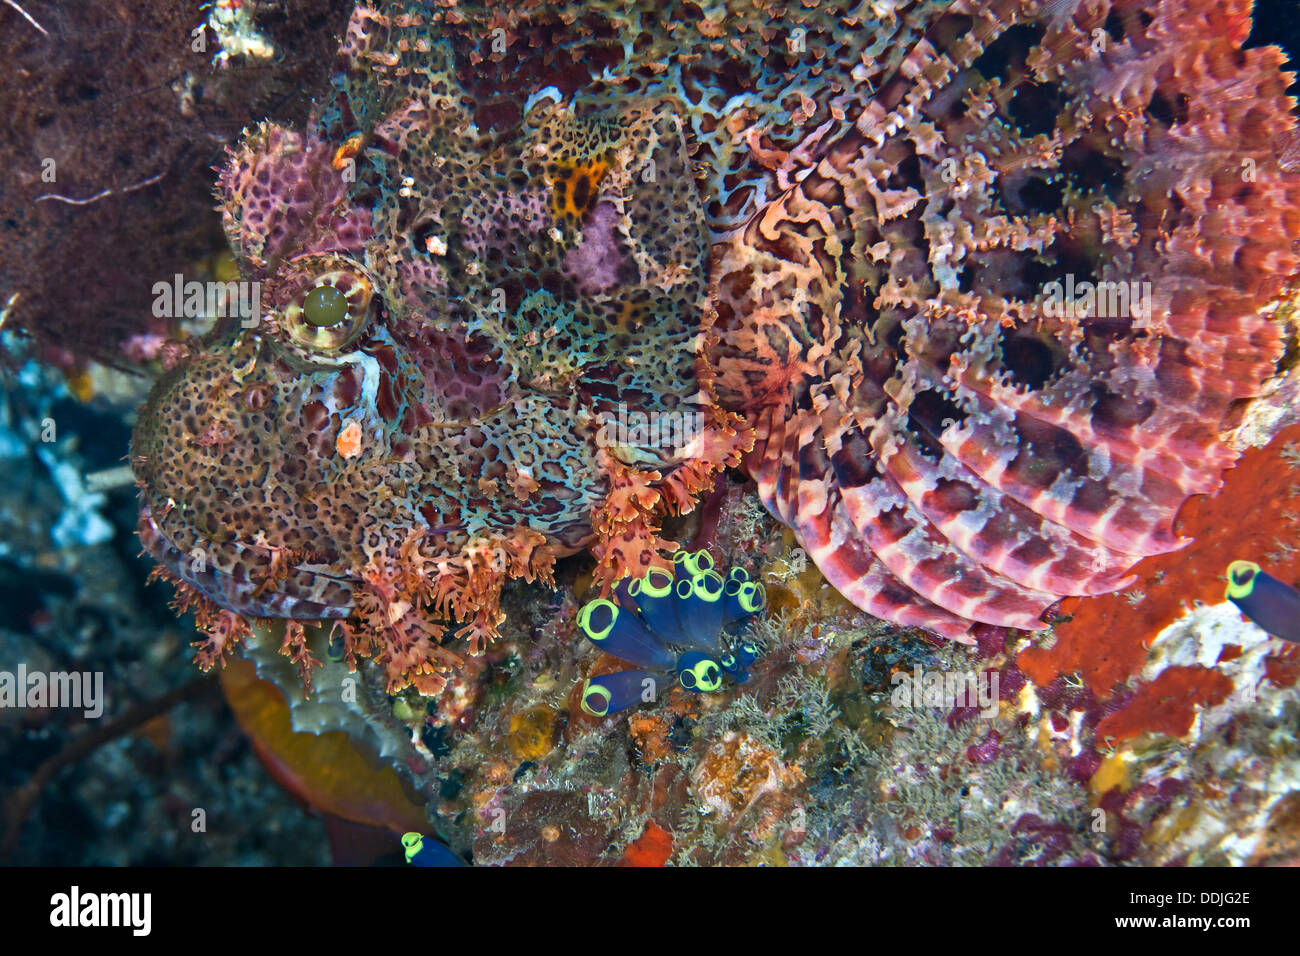 Close up image of bearded scorpionfish révélant les détails de la tête et des nageoires pectorales. Puerto Galera, Philippines. Banque D'Images